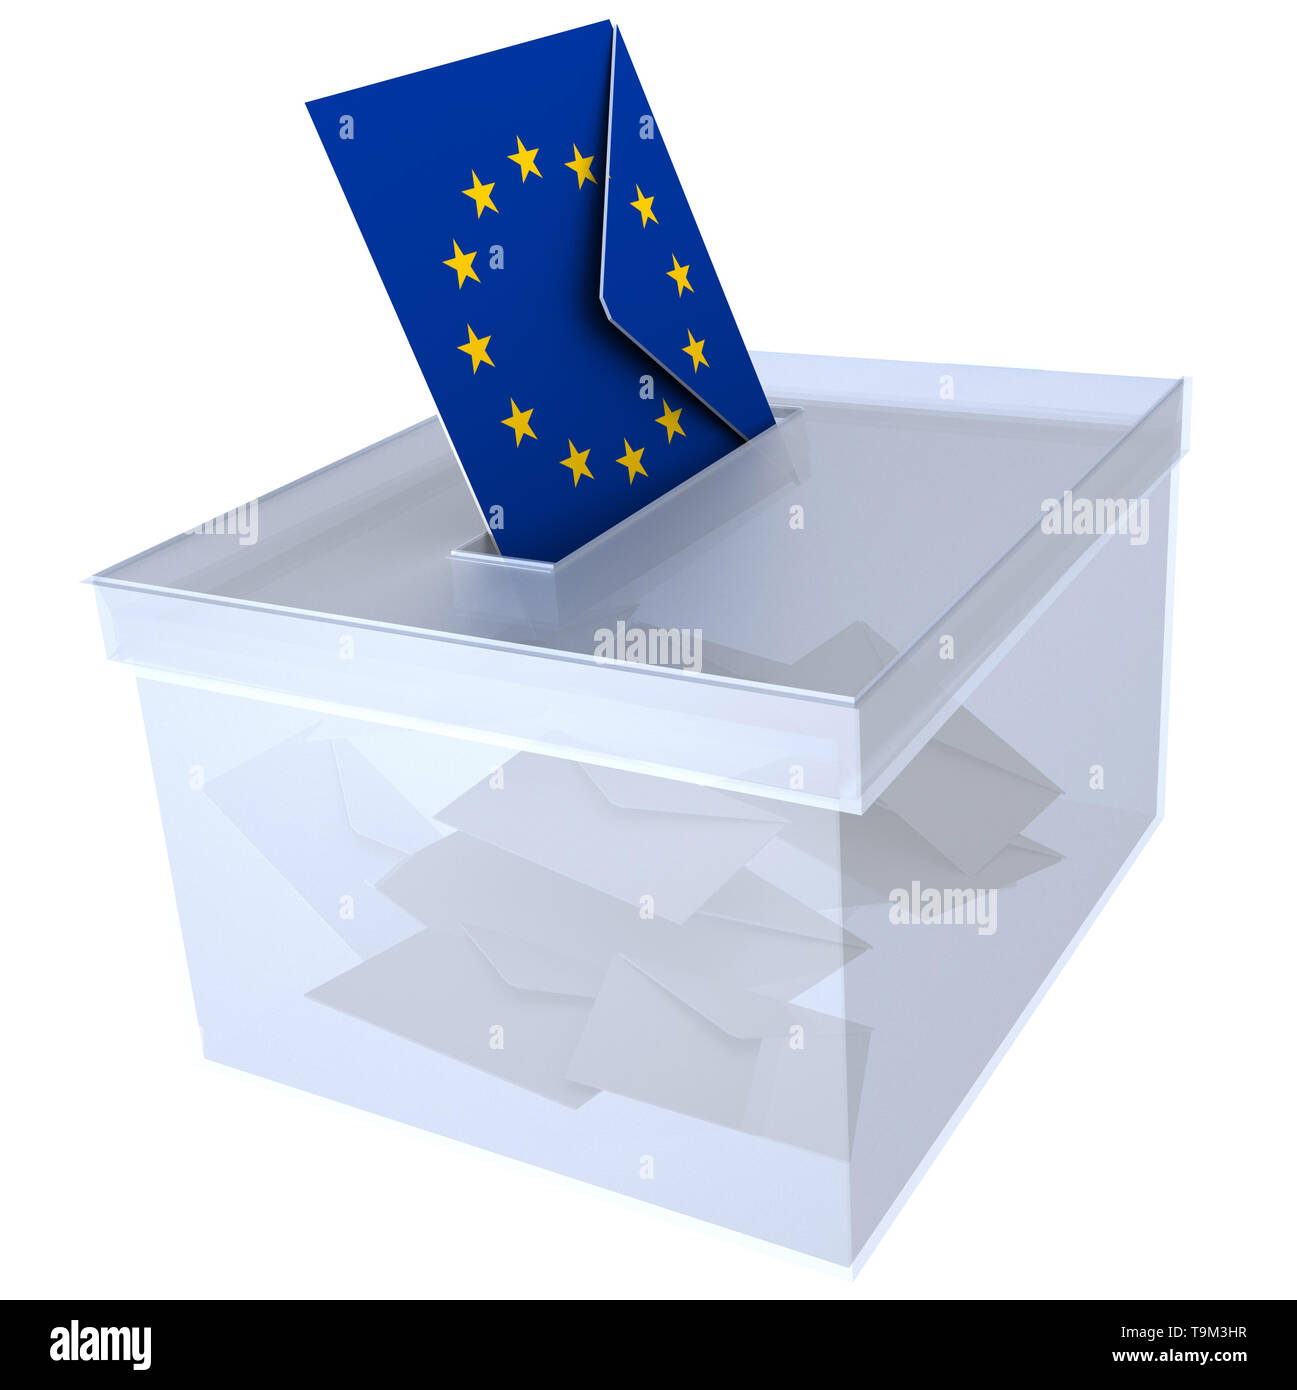 Wahlen in der Europäischen Union Stimmzettel und Kuvert mit der europäischen Flagge stimmen für EU-Parlament - 3D-Rendering Stockfoto